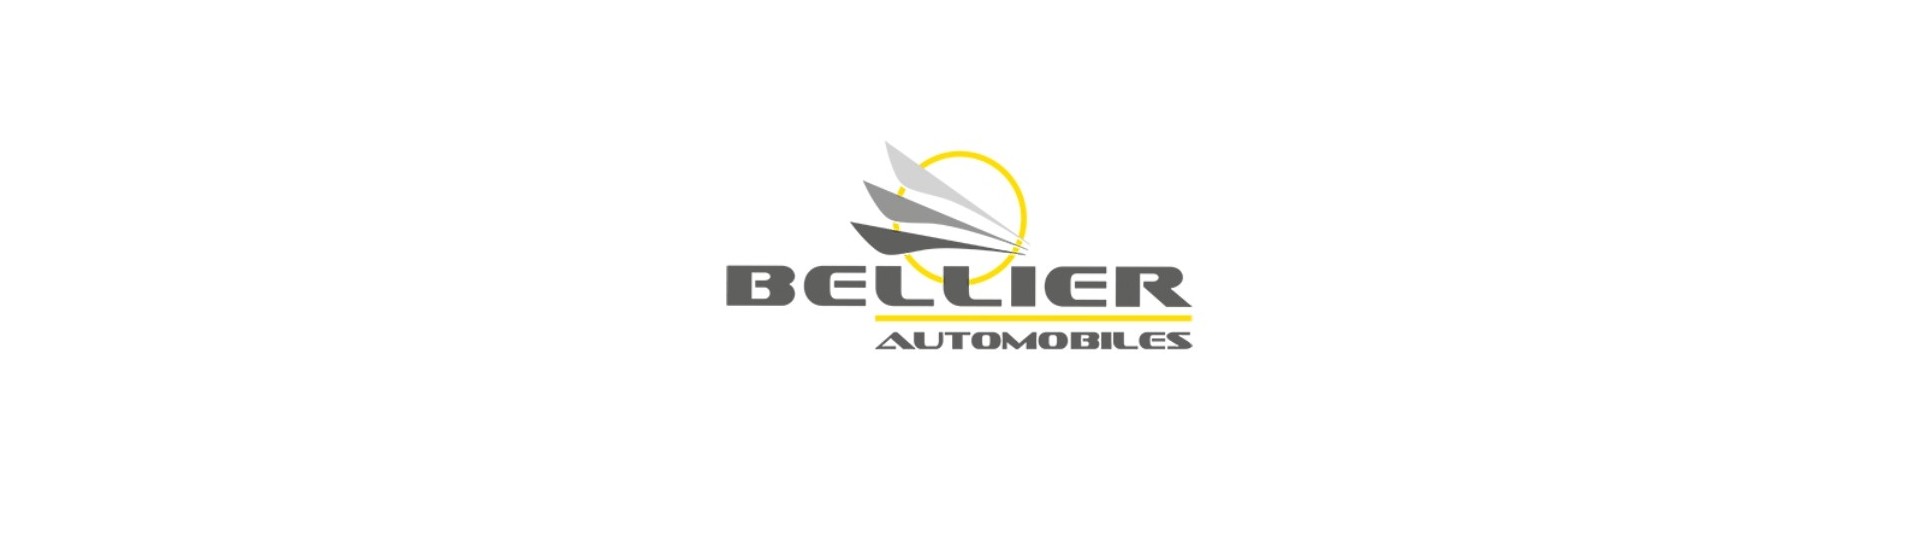 Solskydd till bästa pris för bilar utan körkort Bellier